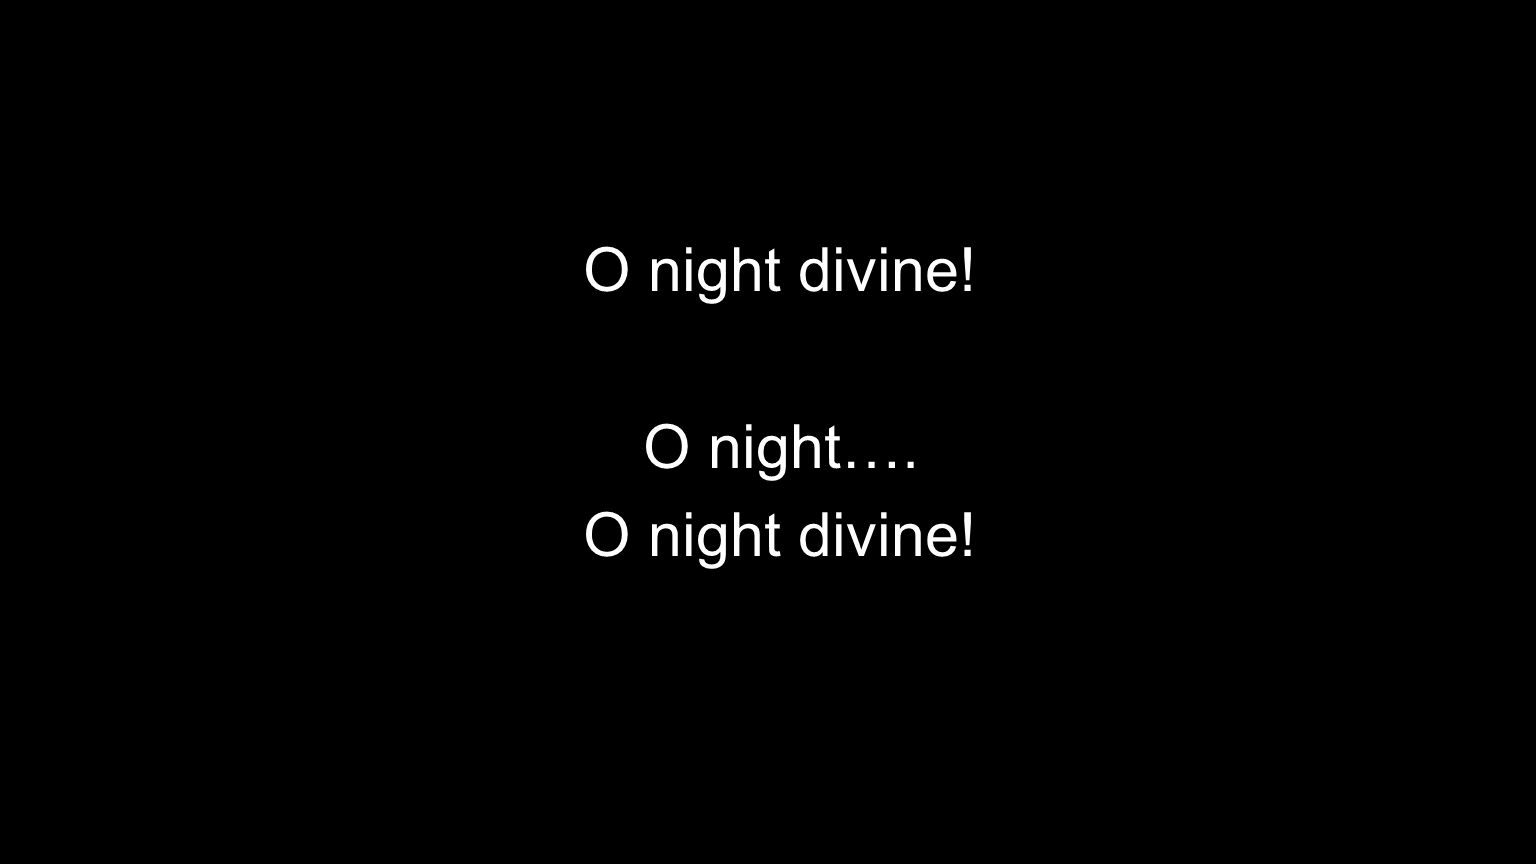 O night divine! O night…. O night divine!